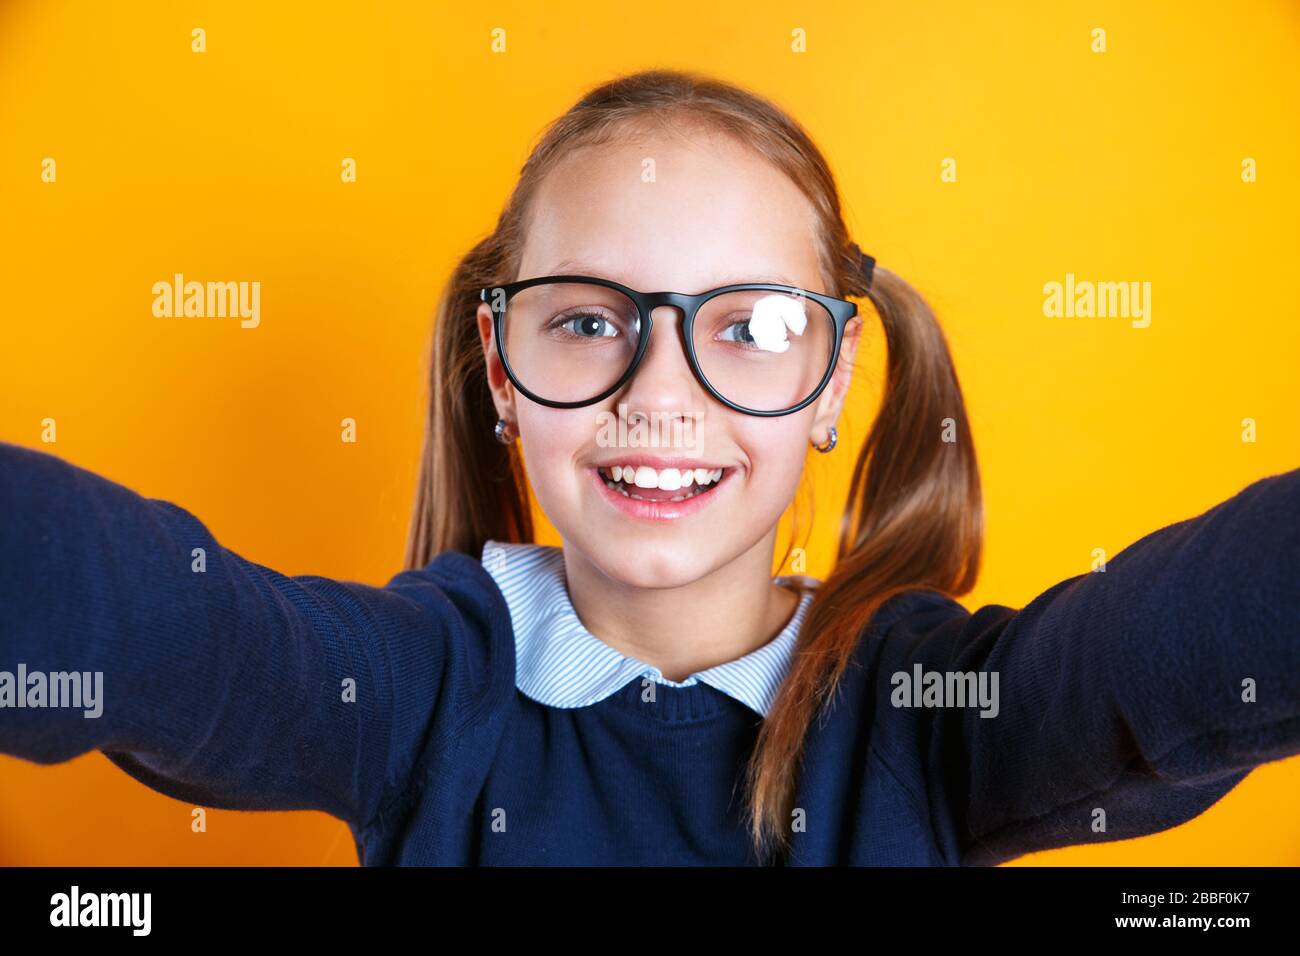 Nahaufnahme des kleinen 12-13-jährigen Mädchens in Brille, das selfie auf  dem Handy auf gelbem Hintergrund macht Stockfotografie - Alamy